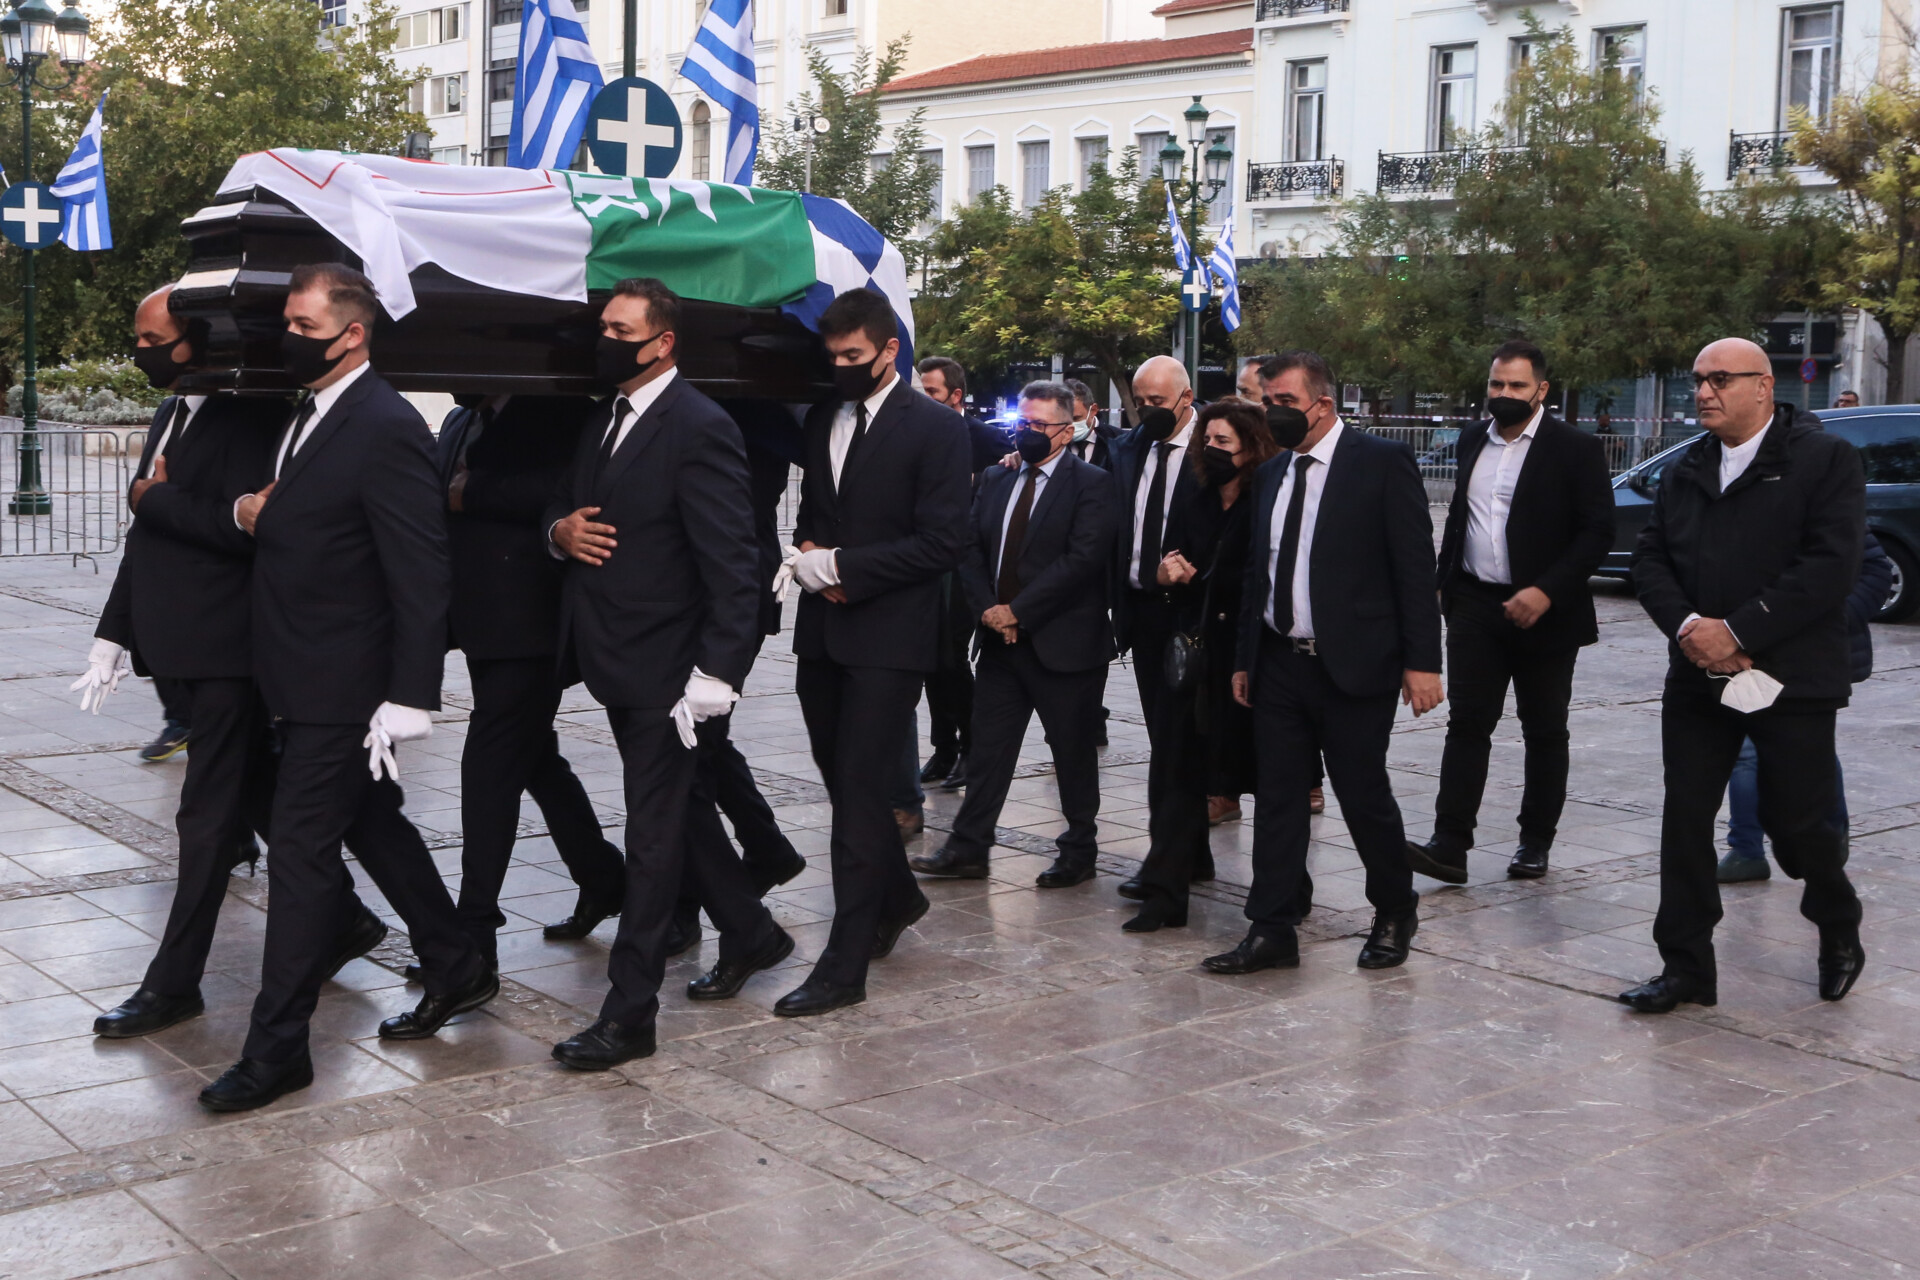 Το φέρετρο της Φώφης Γεννηματά καλυμμένο με την ελληνική σημαία και τις σημαίες του ΠΑΣΟΚ και του Κινήματος Αλλαγής, όταν έφτανε στο παρεκκλήσι της Μητρόπολης για το λαϊκό προσκύνημα © Eurokinissi